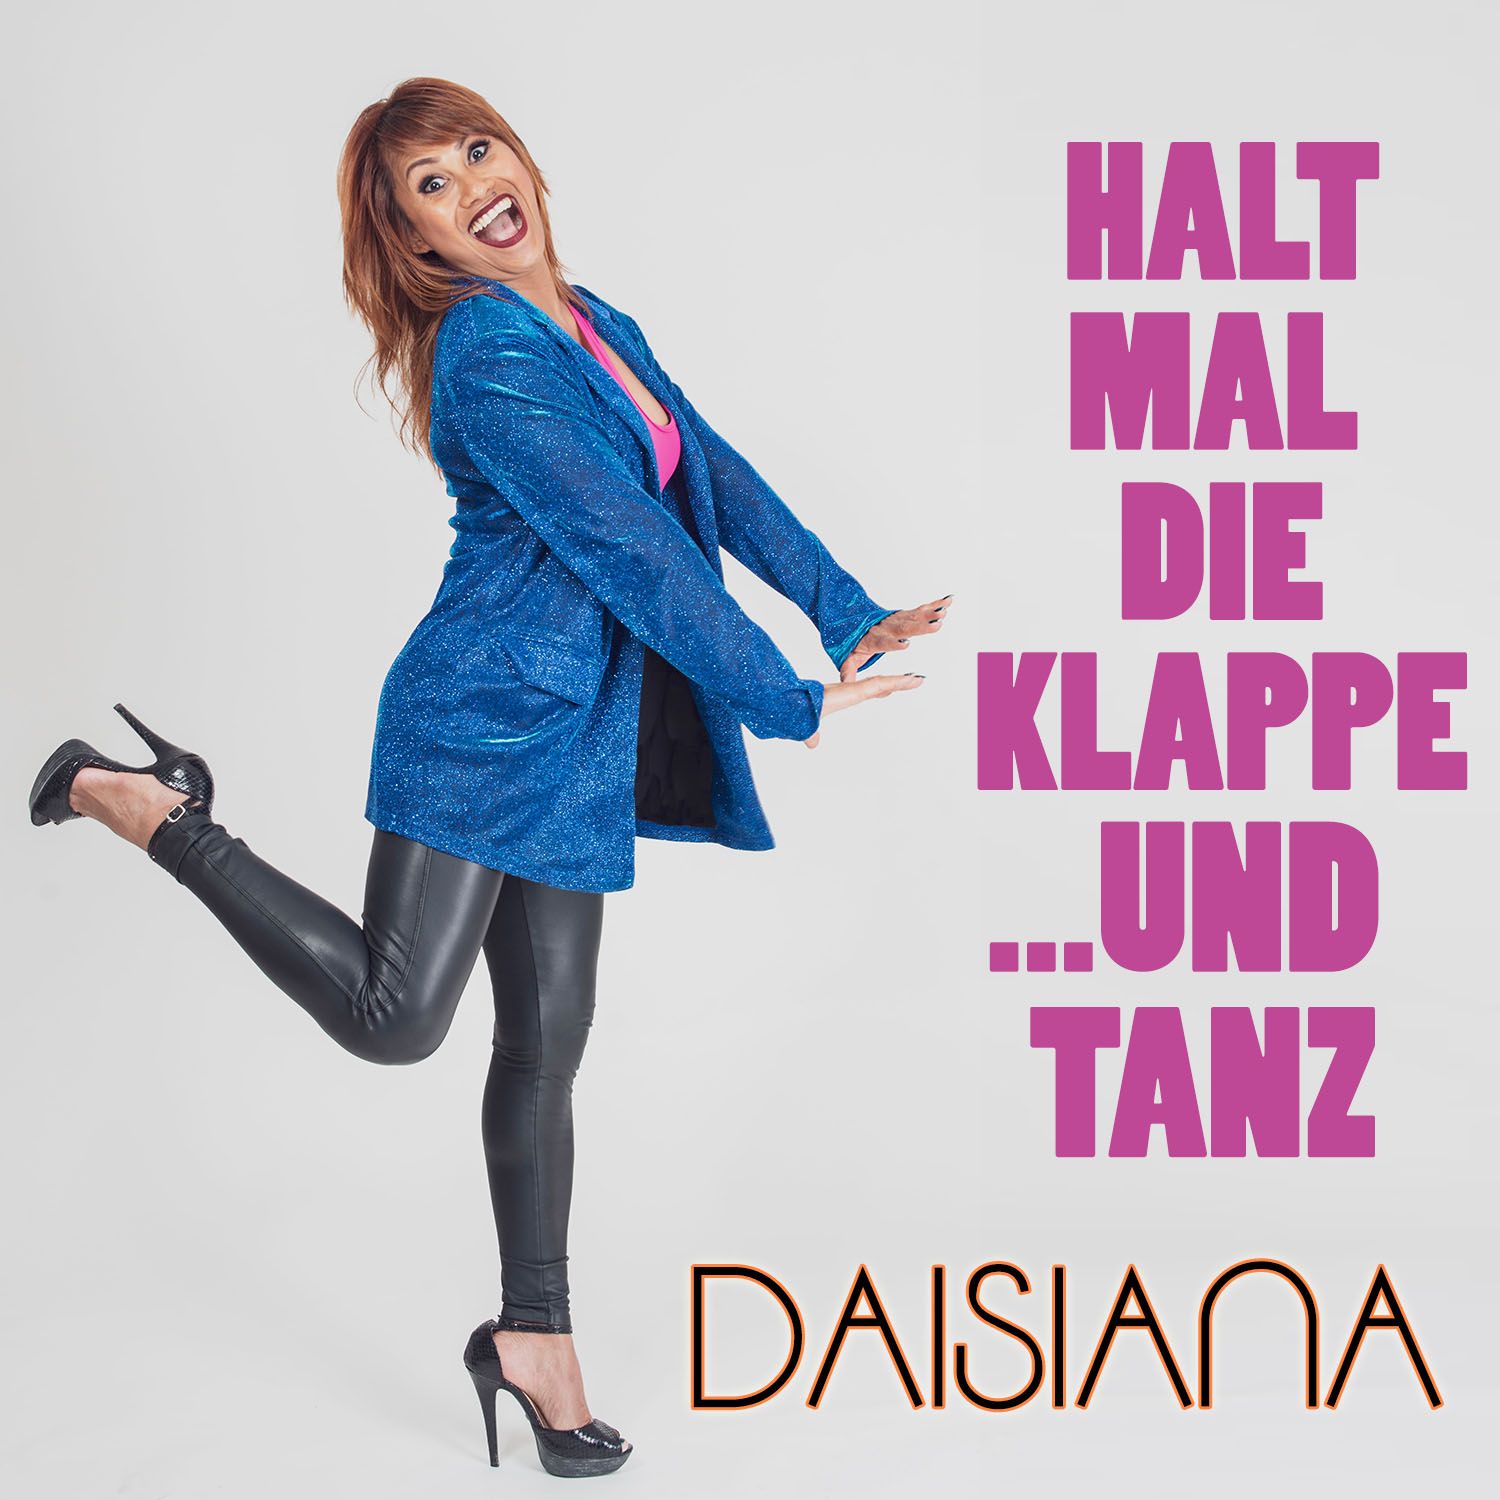 Daisiana - Halt mal die Klappe und Tanz